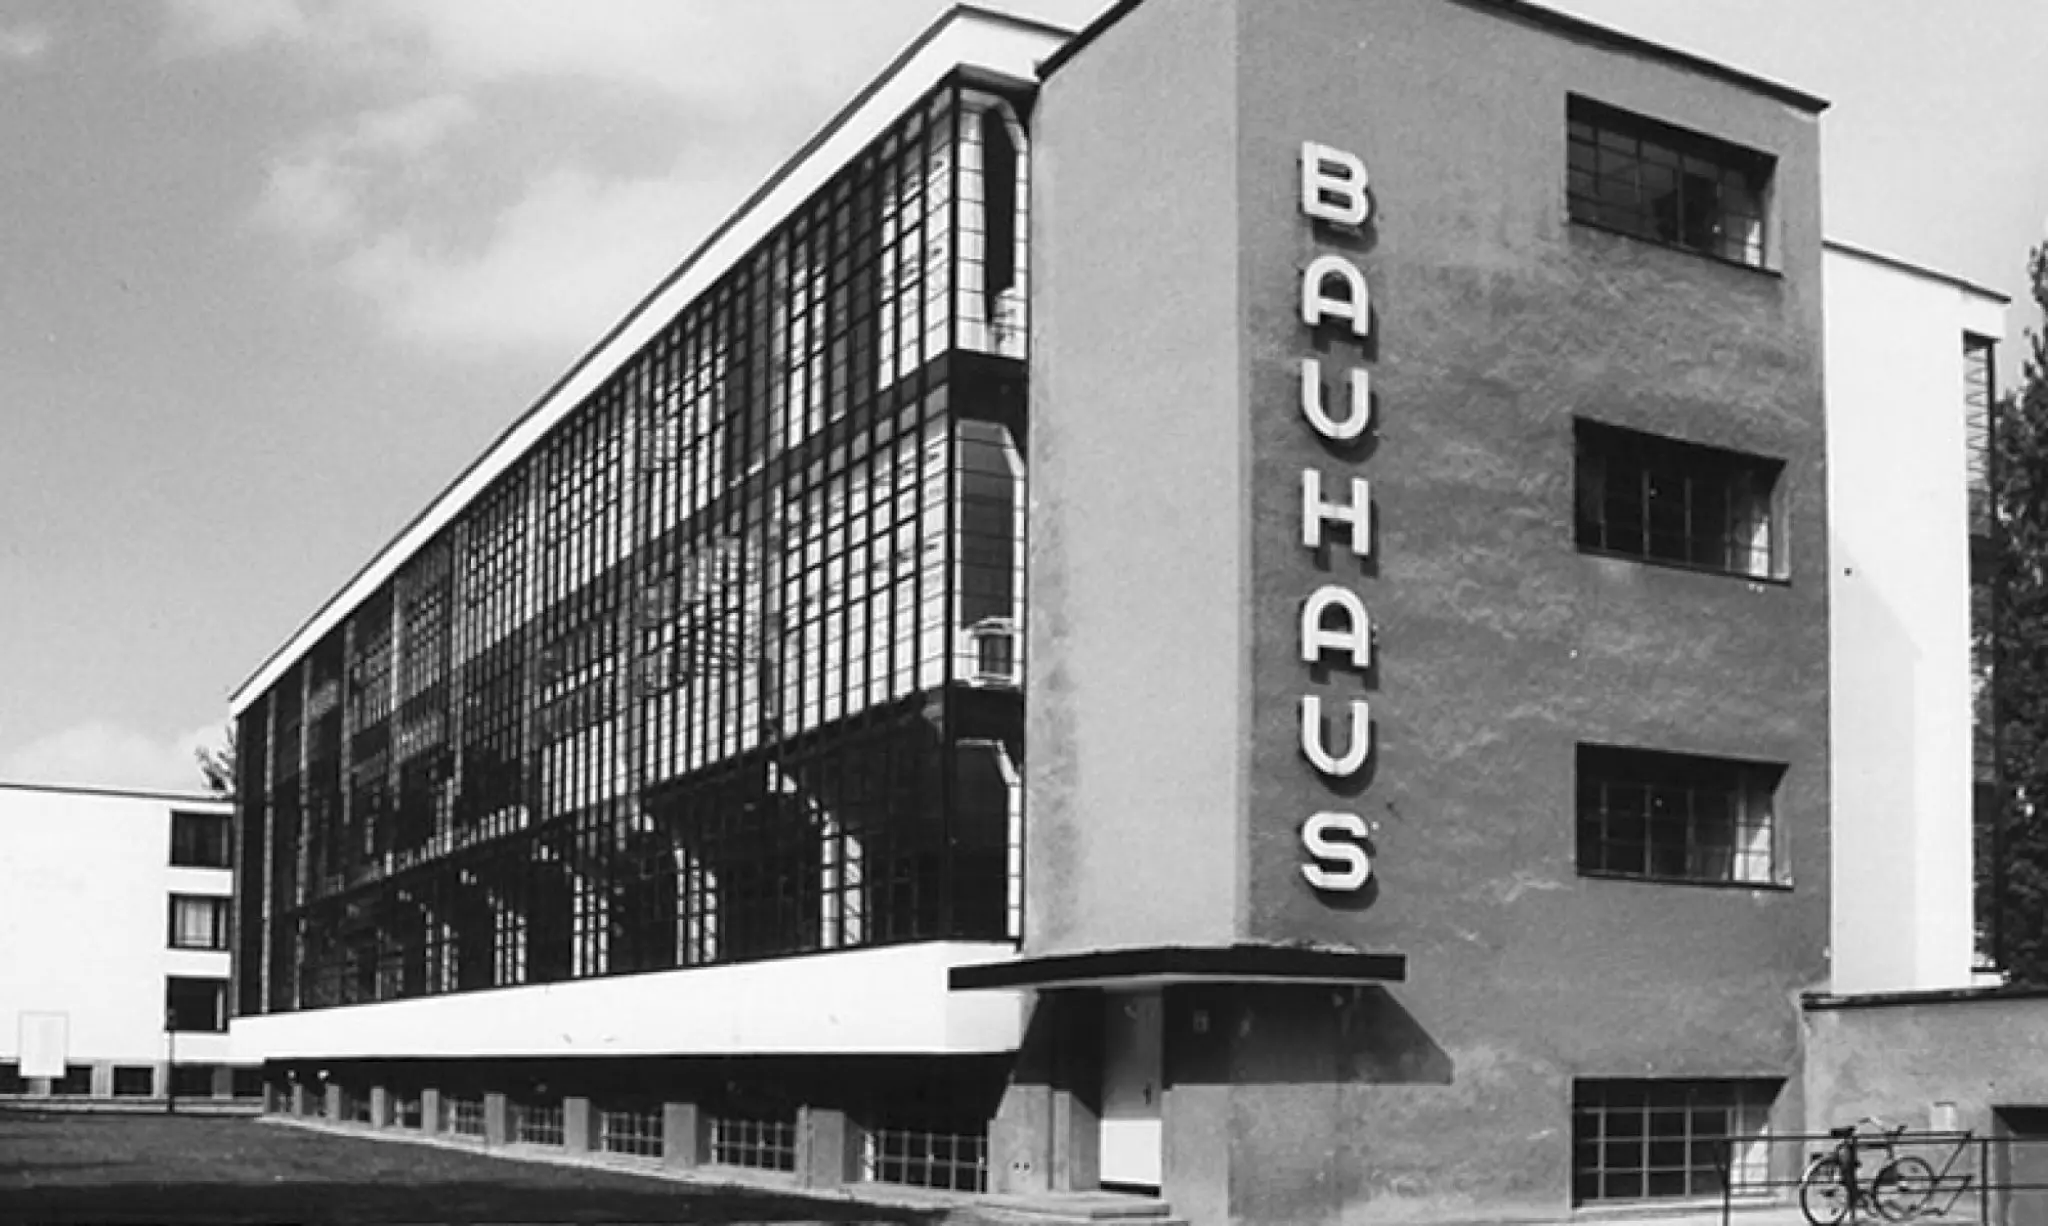 História da Escola Bauhaus